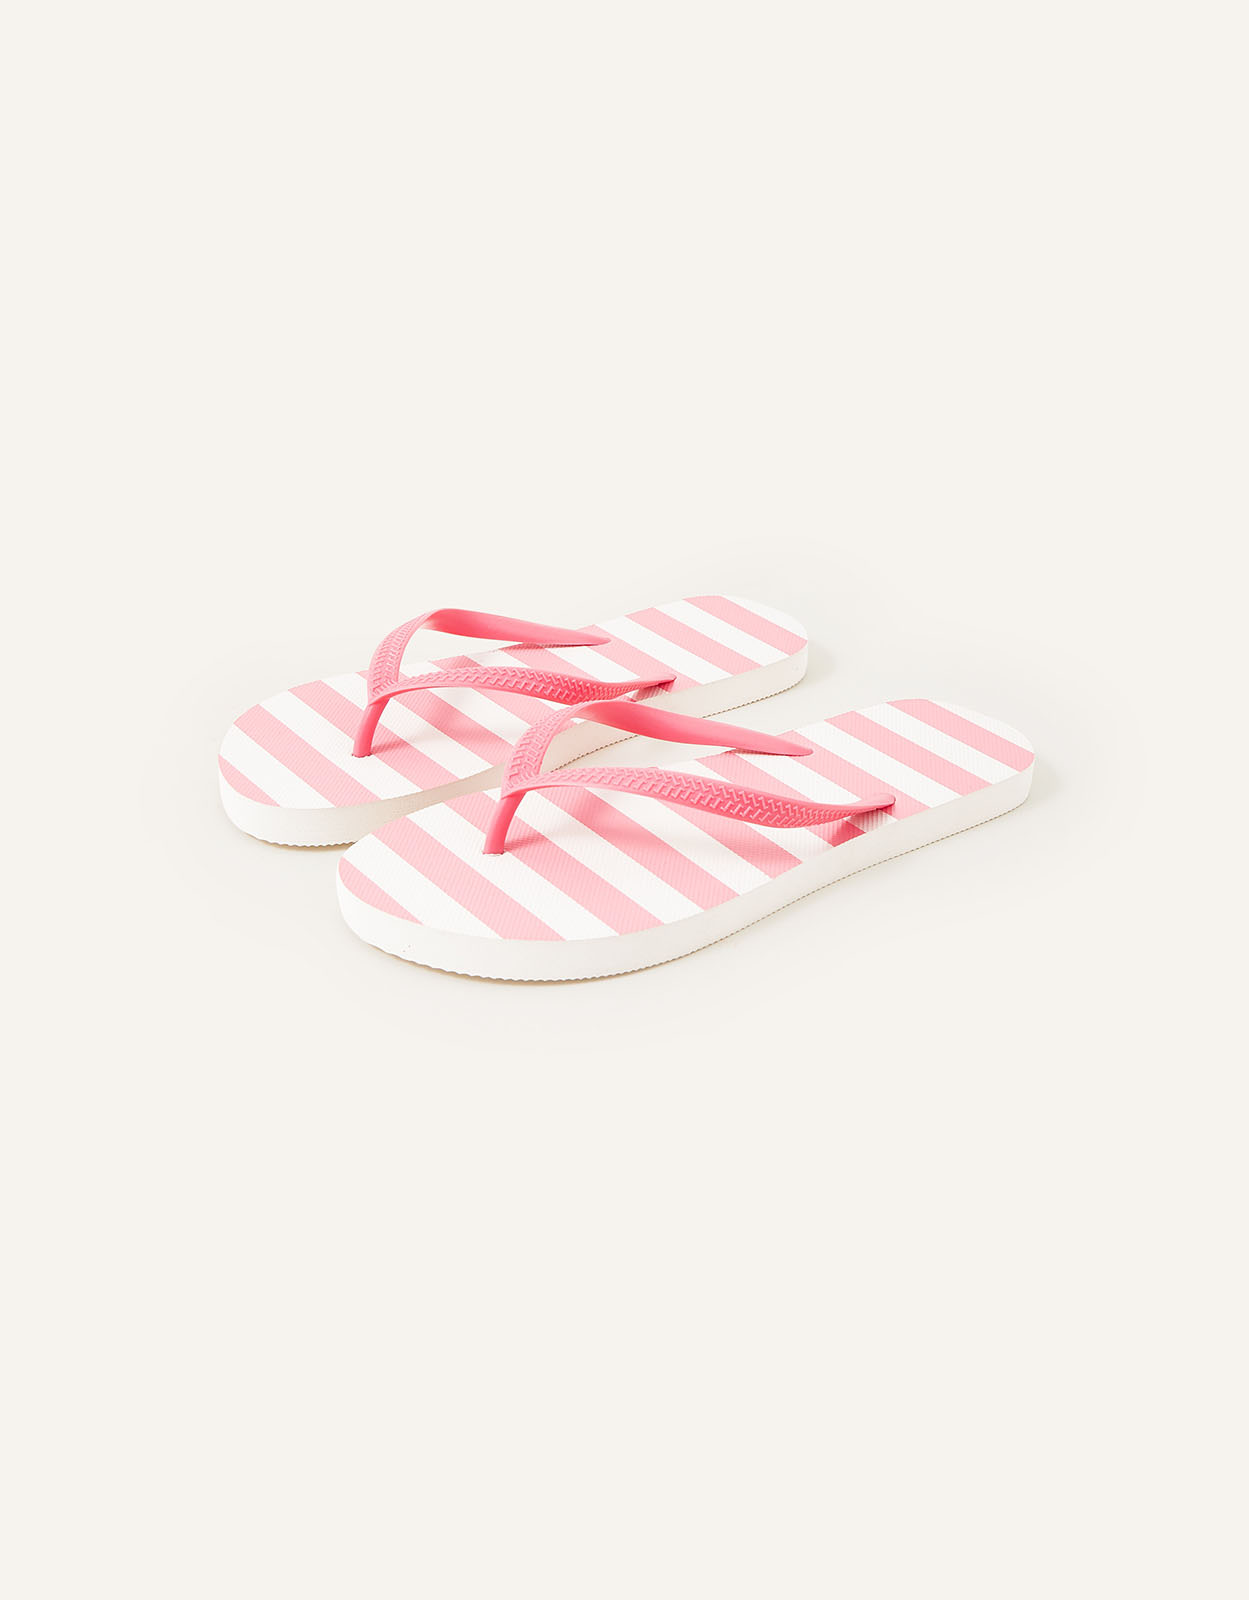 Accessorize Women's Stripe Flip Flops Pink, Size: M